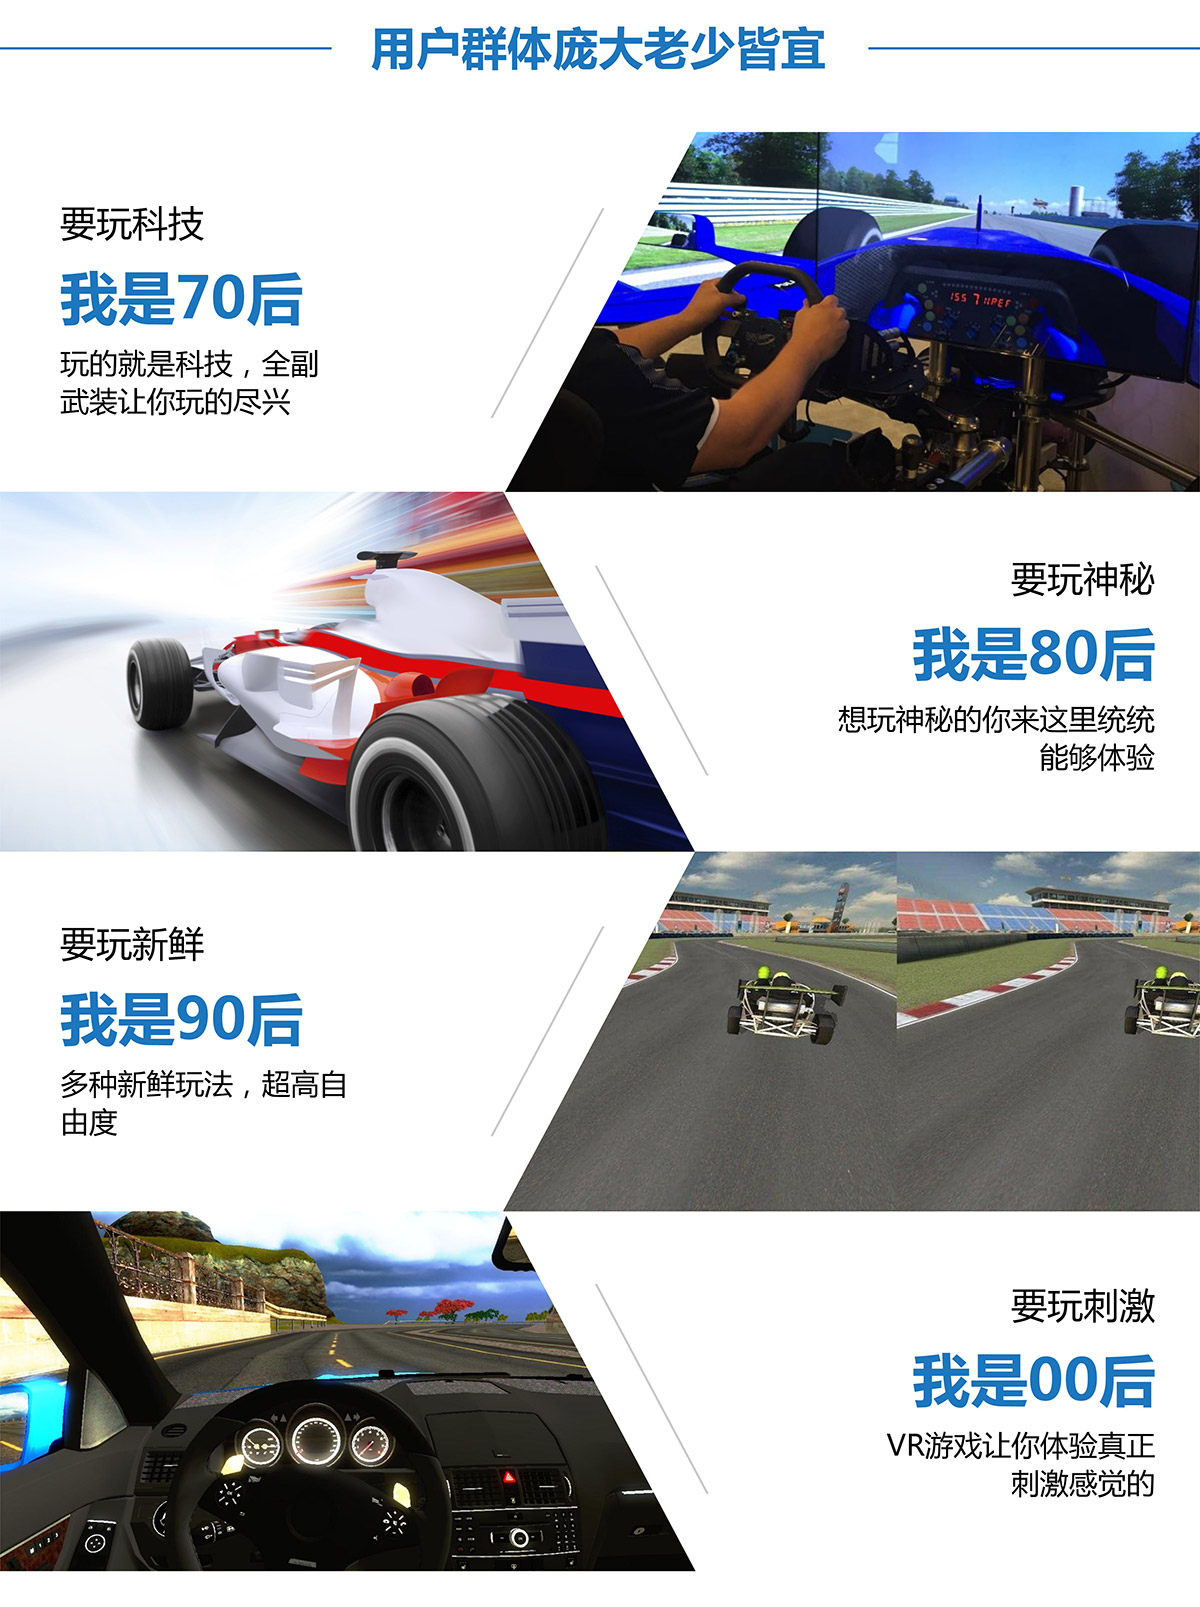 互动电影VR赛车用户群体庞大老少皆宜.jpg